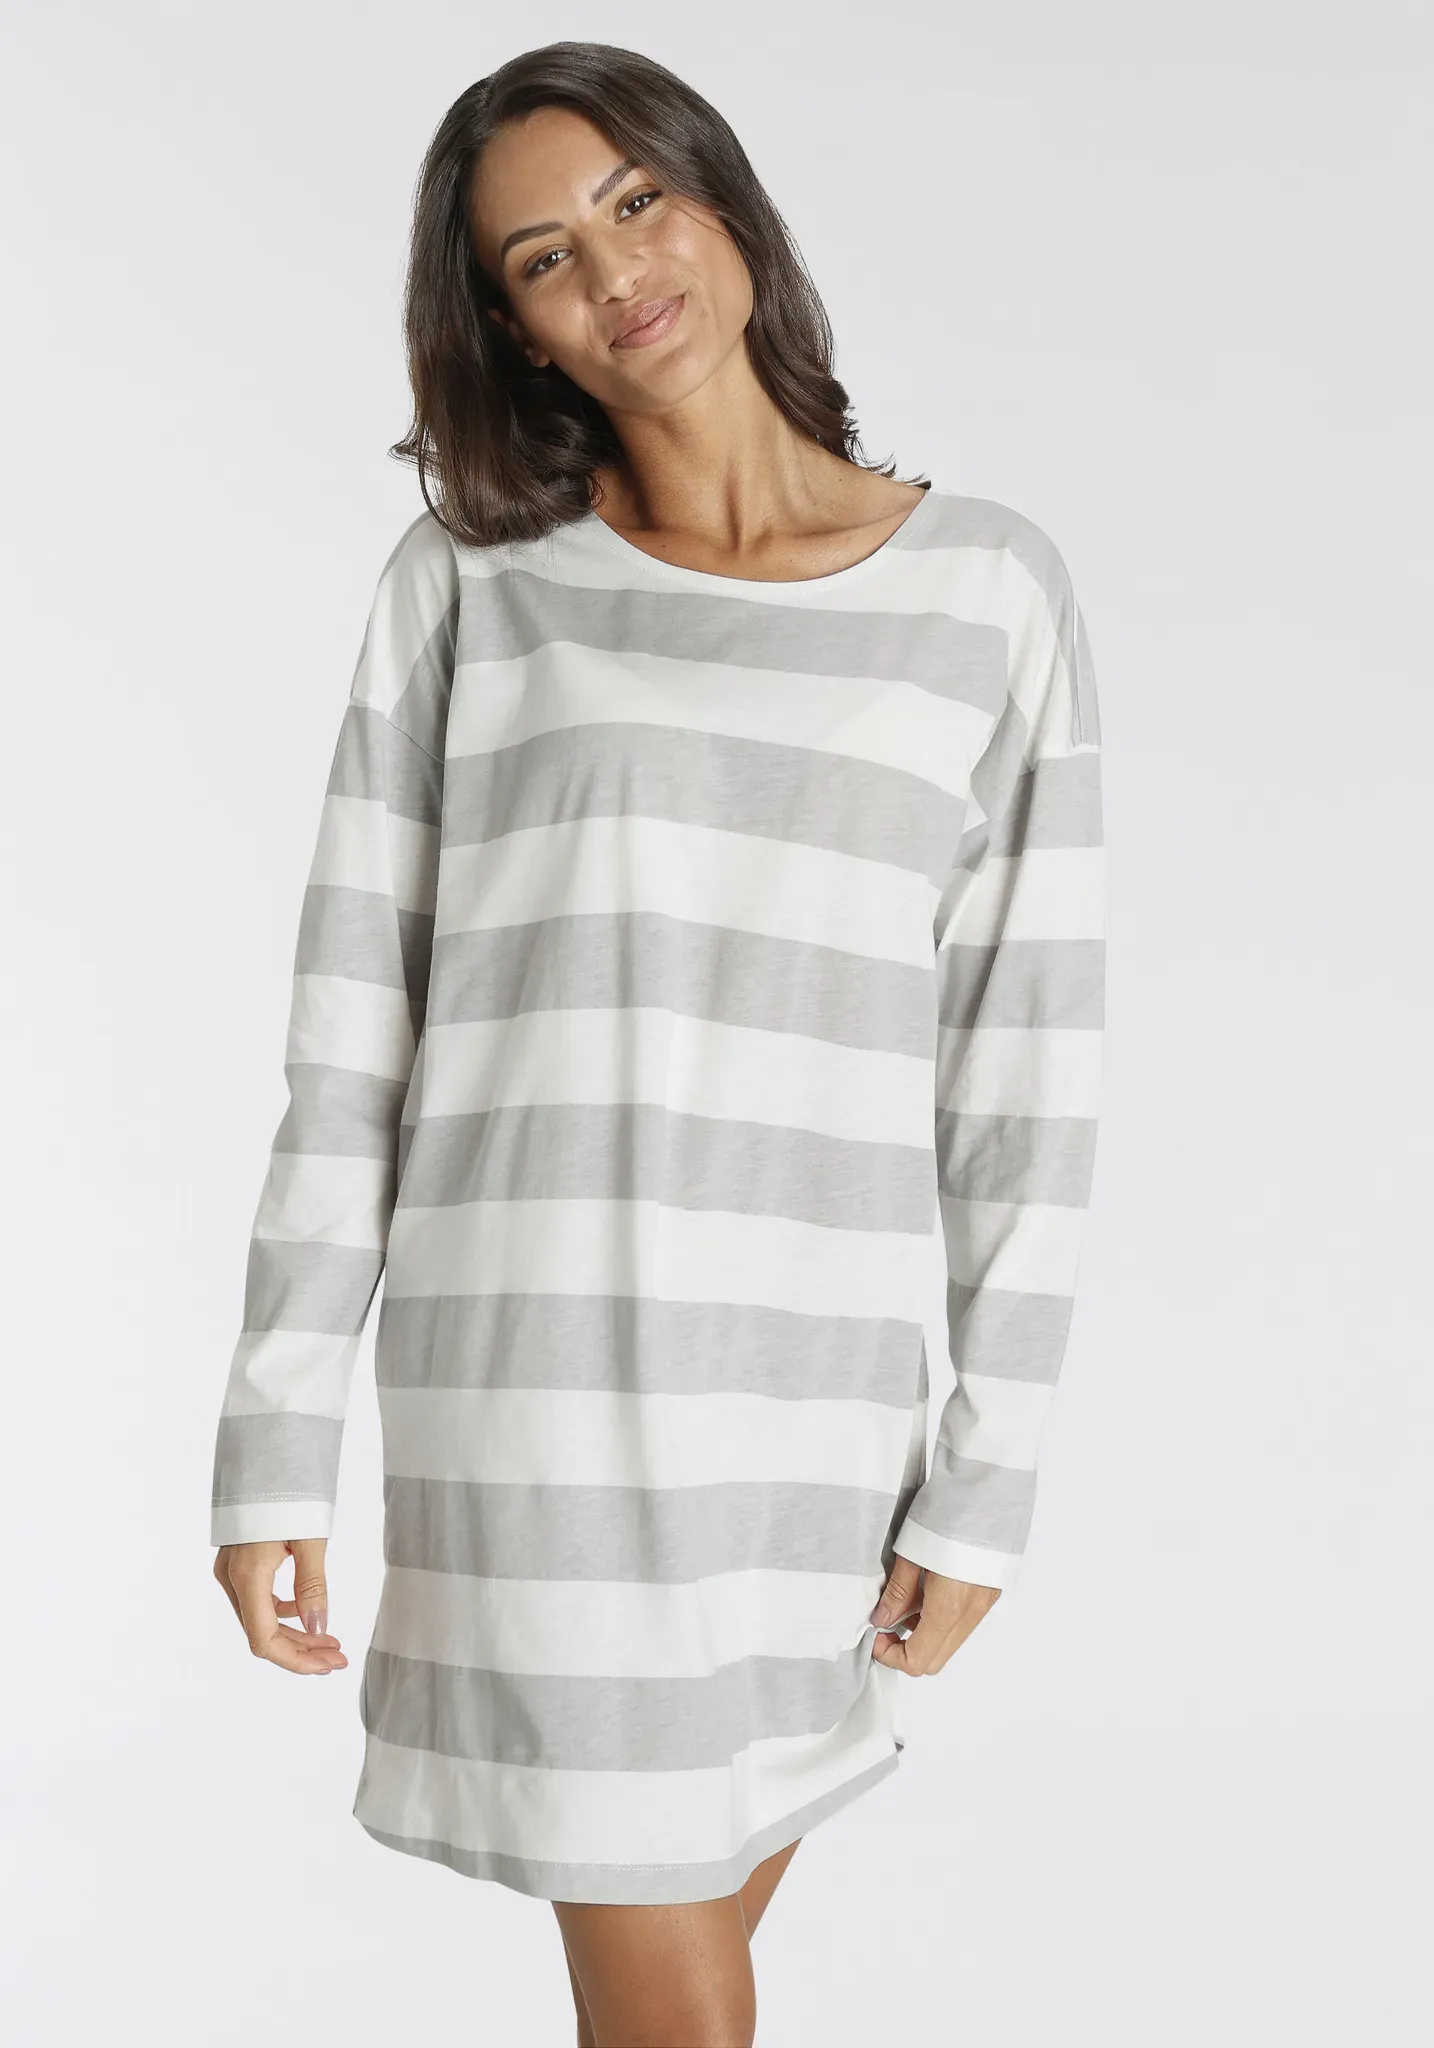 Nachthemd S.OLIVER Gr. 36/38, N-Gr, weiß (grau, weiß, gestreift) Damen Kleider Nachthemden in schönem Streifenmuster